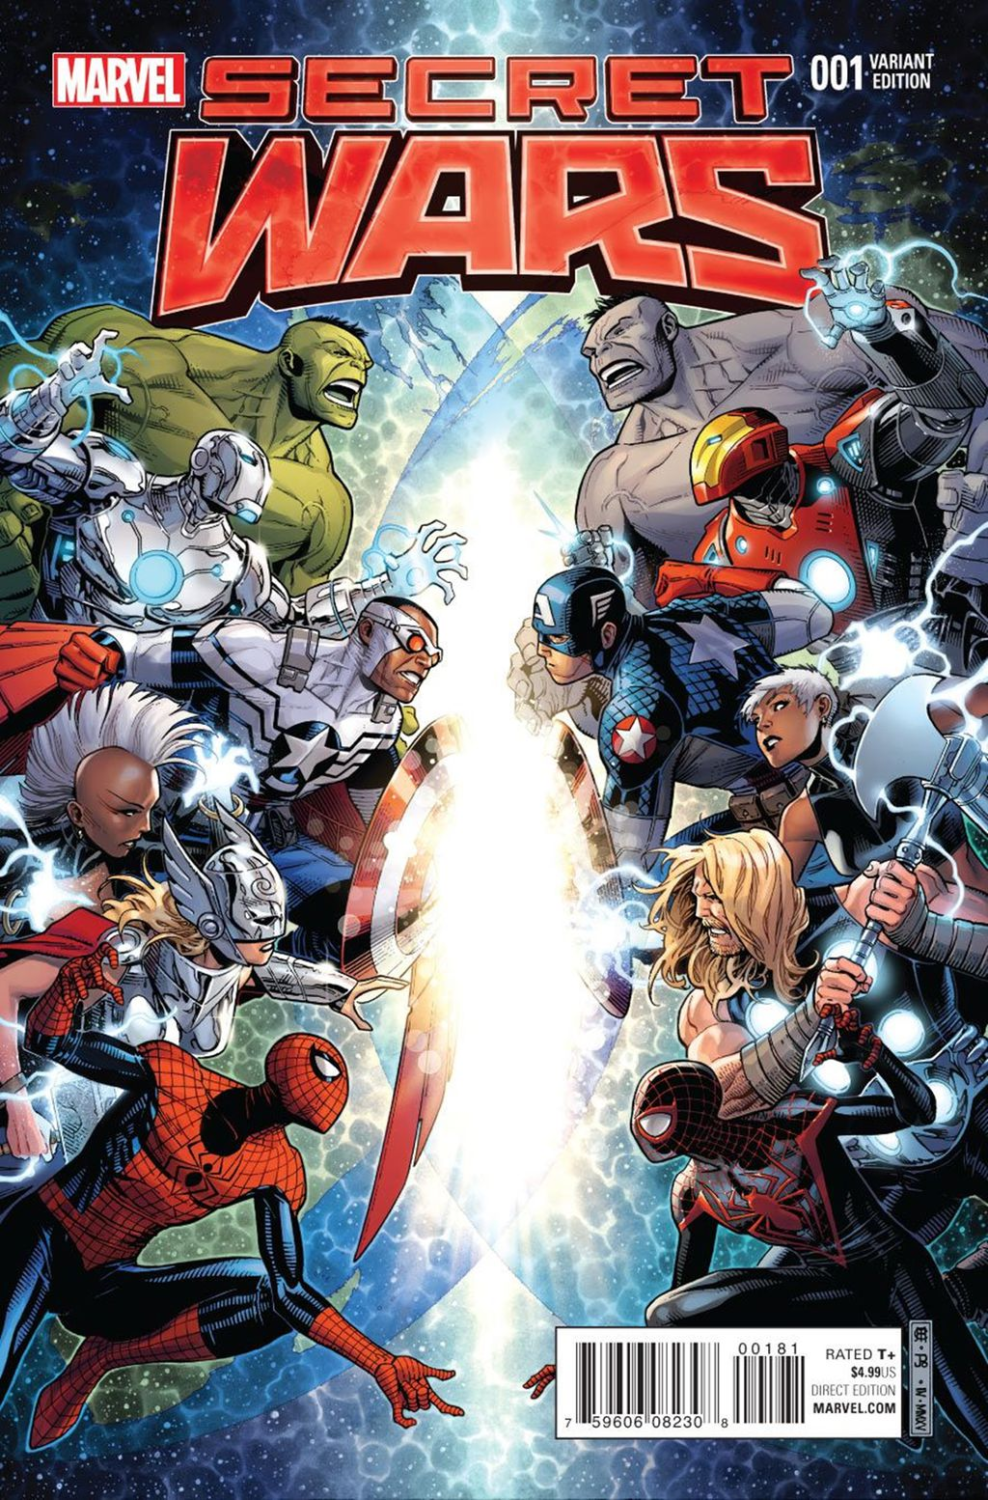 Resenha: Homem-Formiga, a missão impossível da Marvel - UNIVERSO HQ